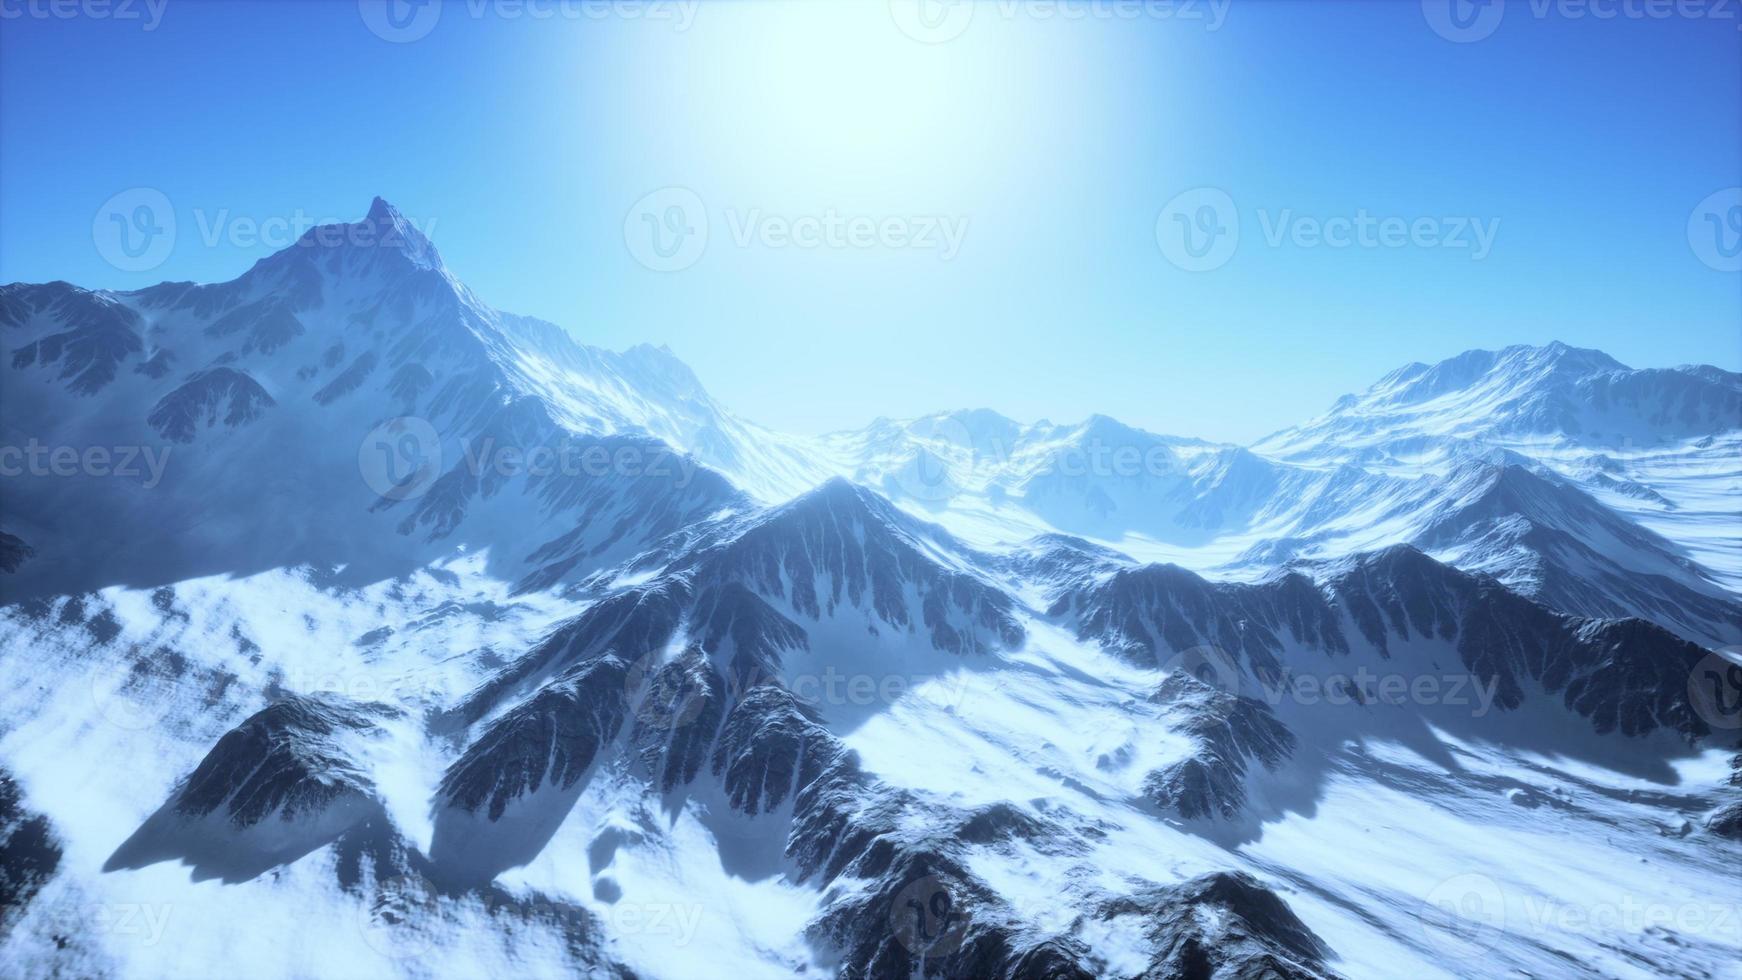 paysage de caucase d'hiver de montagne avec des glaciers blancs et un pic rocheux photo